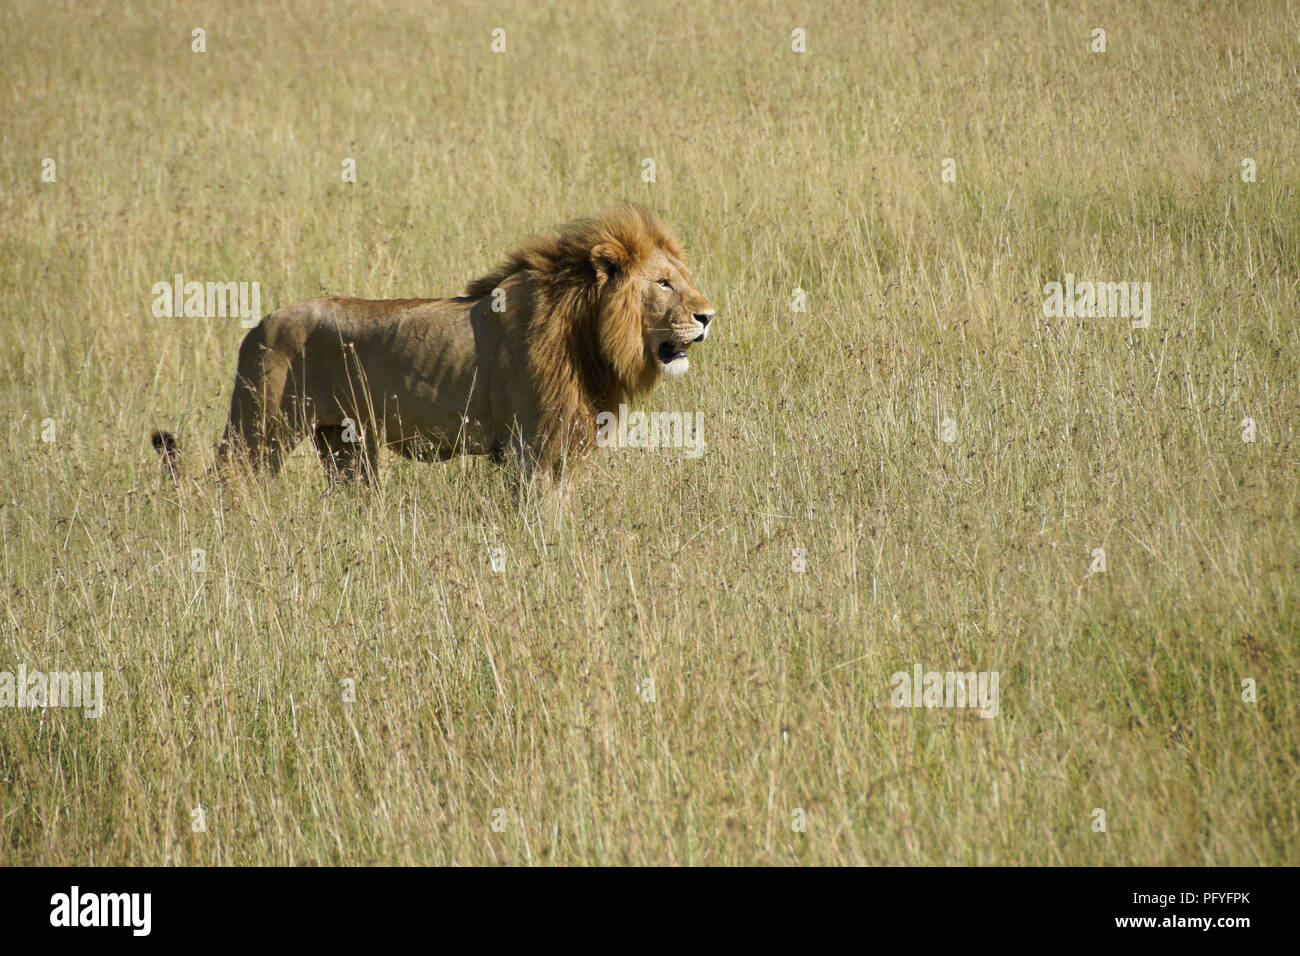 Homme Lion debout dans l'herbe haute, Masai Mara, Kenya Banque D'Images